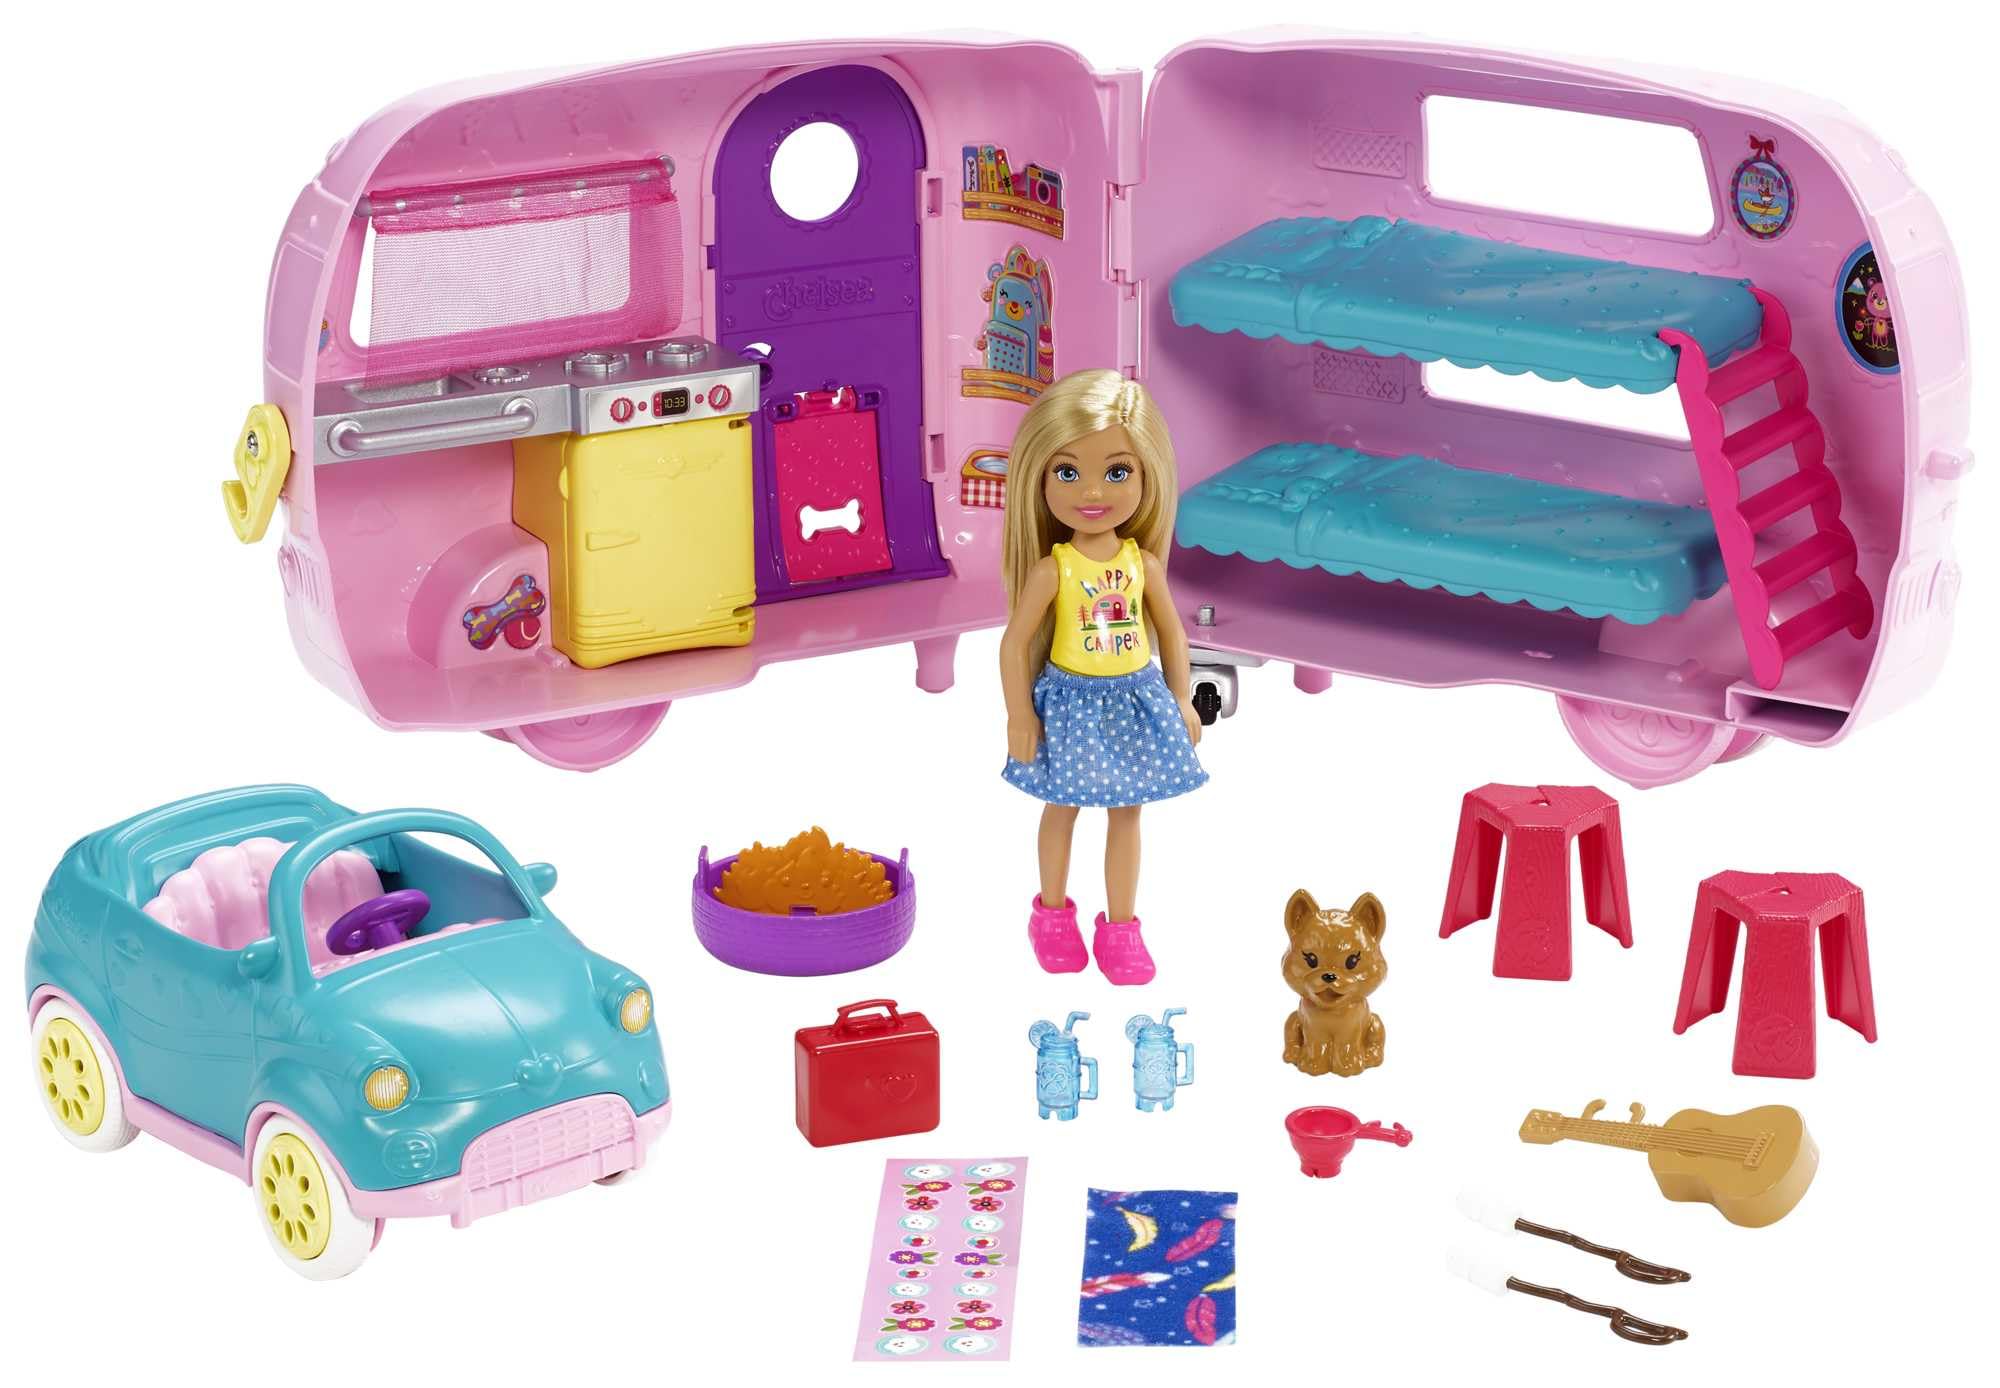 Barbie Chelsea Serie, Chelsea Auto und Camper Set mit 10+ Barbie Camping Accessoires, 1x Chelsea Puppe, Teal Auto und Pink Mini Camper, Geschenke für Kinder ab 3 Jahren,FXG90